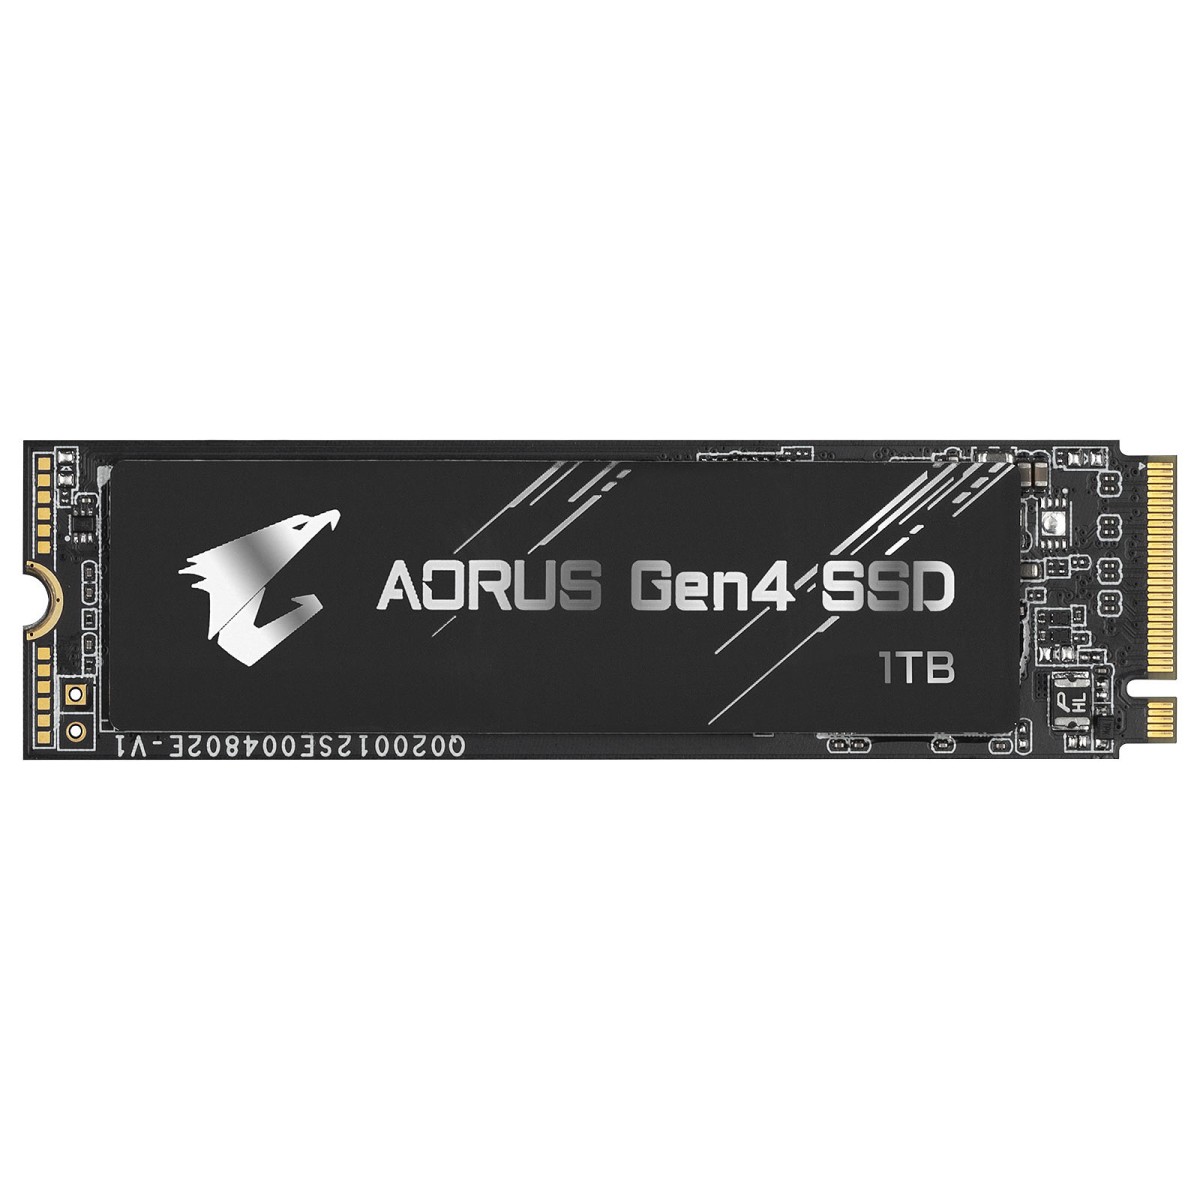 Aorus Gen4 SSD